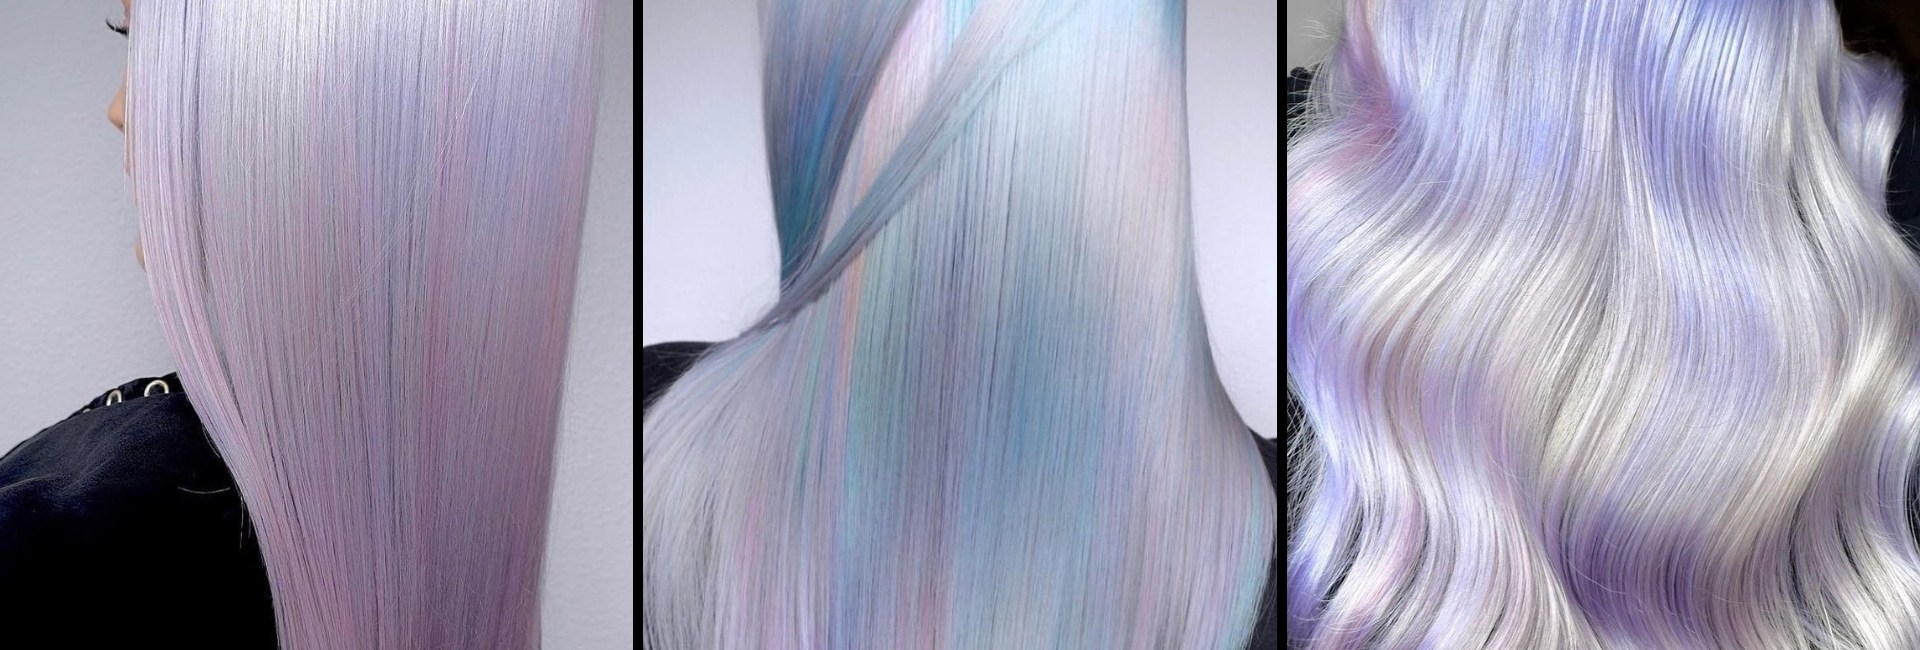 Trois exemples de chevelures avec une coloration d'inspiration holographique